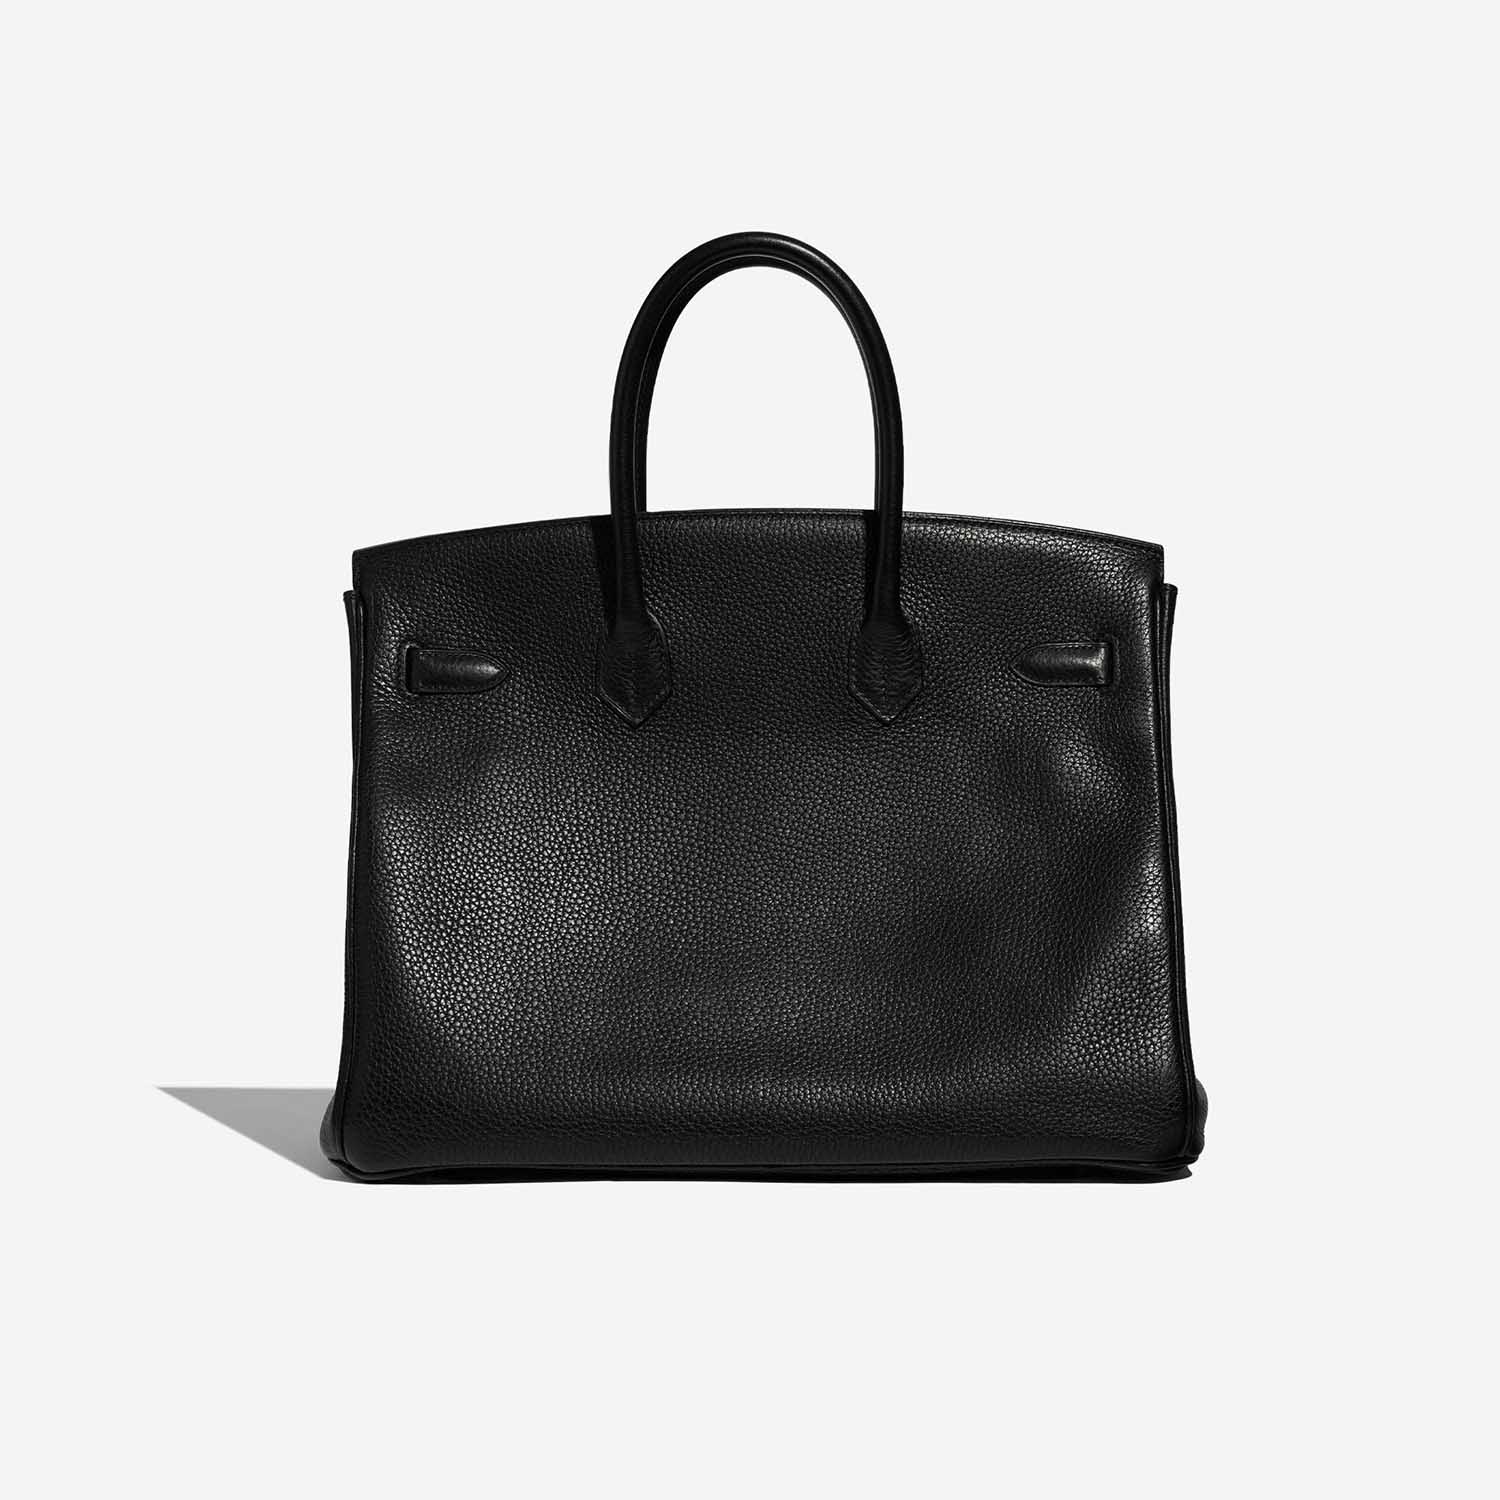 Pre-owned Hermès bag Birkin 35 Clemence Black Black Back | Verkaufen Sie Ihre Designer-Tasche auf Saclab.com